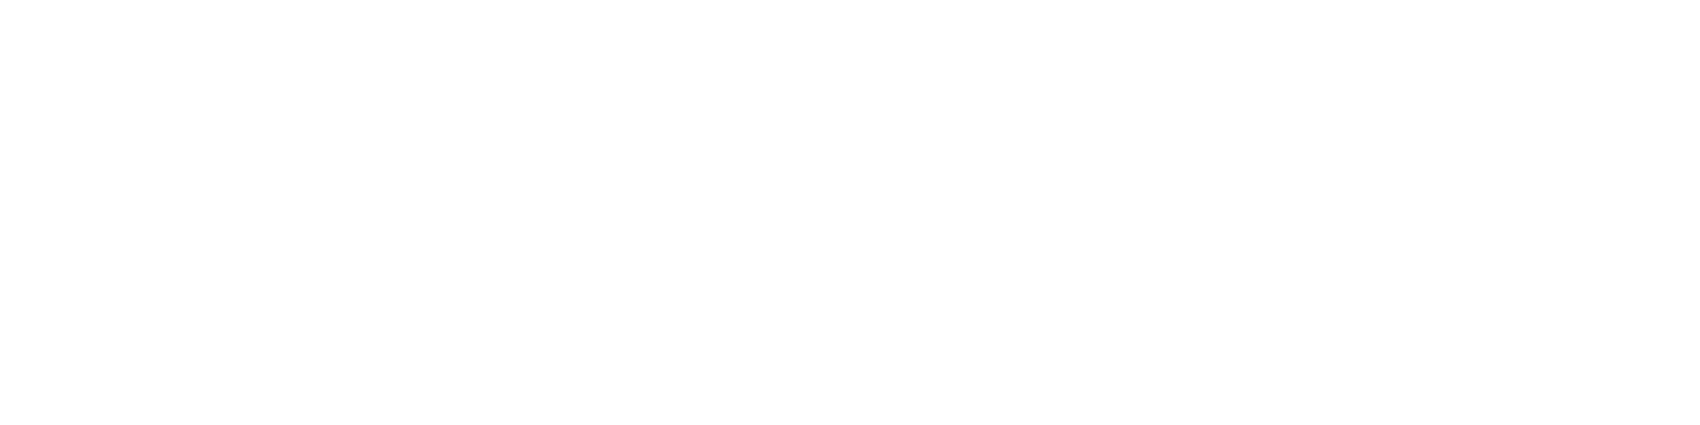 Graphic Design / designer UI